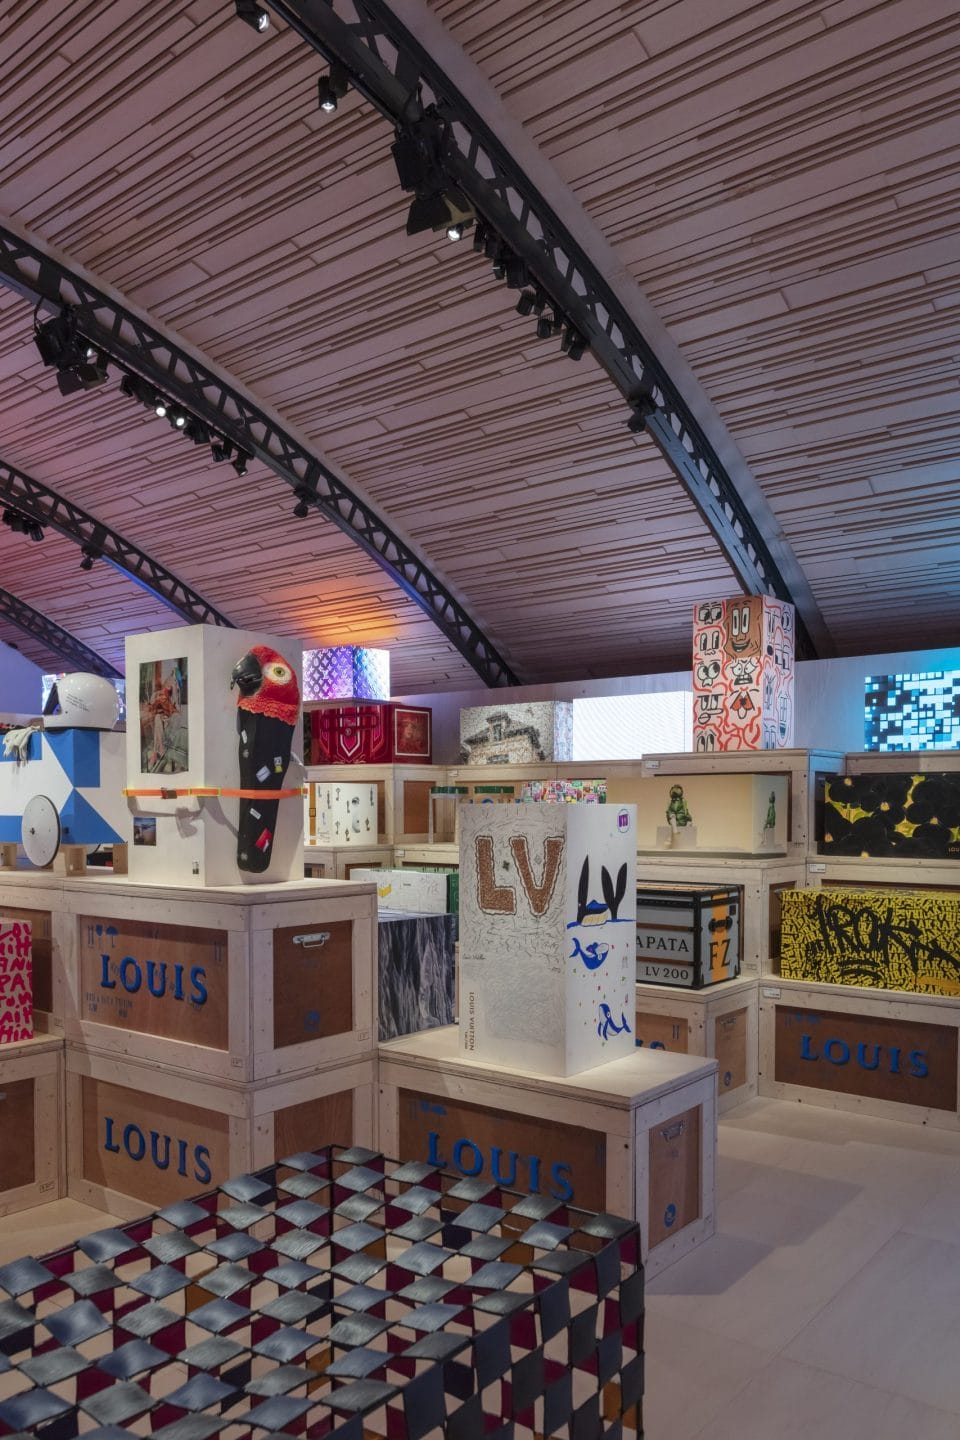 Louis Vuitton: 200 Trunks 200 Visionaries Exhibition - LA Guestlist